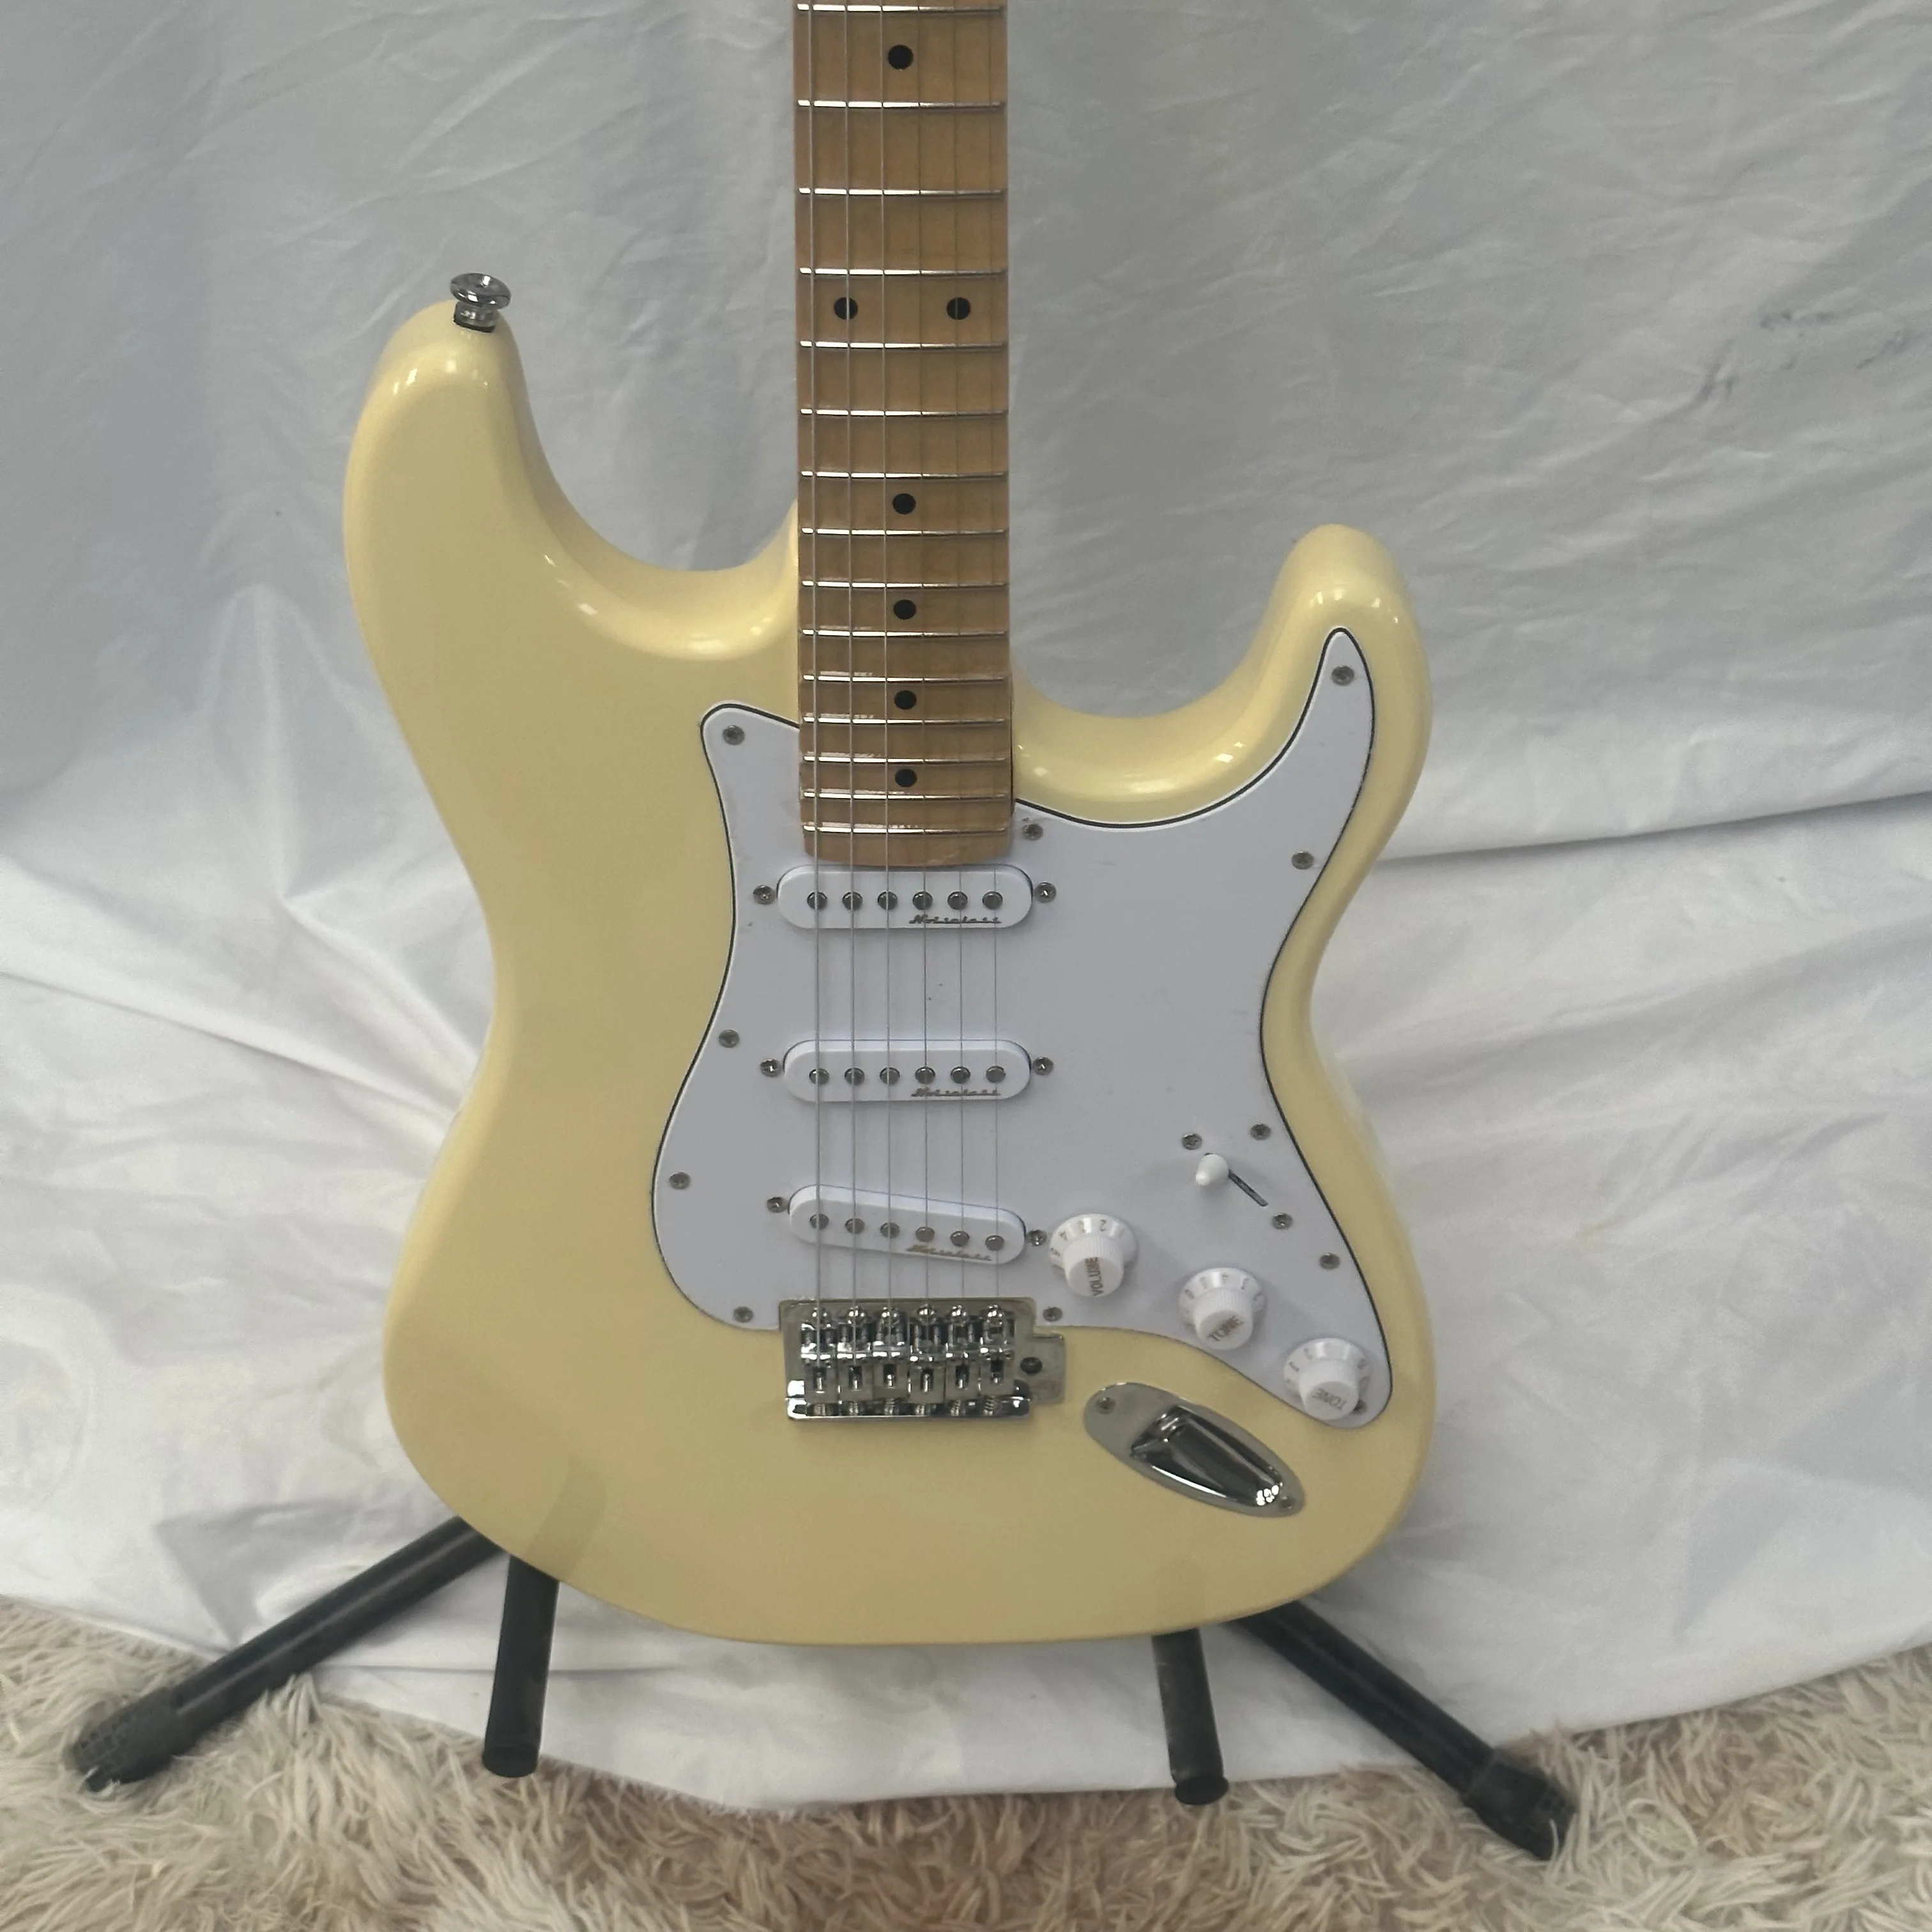 

Кремово-Желтый корпус электрической гитары из липы 6 размеров фотографий Бесплатная доставка